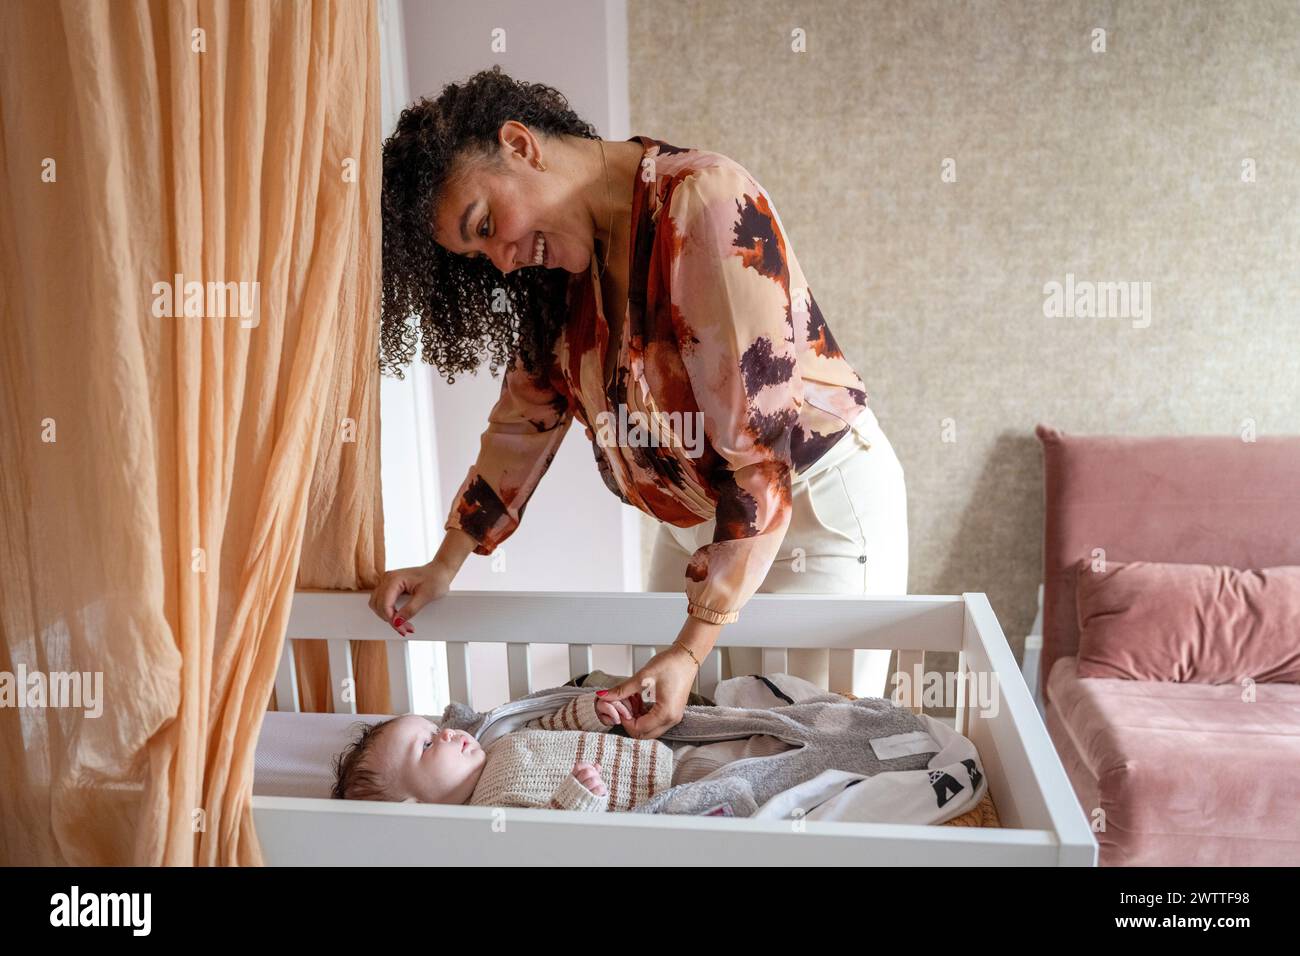 Ein zärtlicher Moment, in dem sich eine Frau über ein Kinderbett beugt, um mit einem Baby zu interagieren. Stockfoto